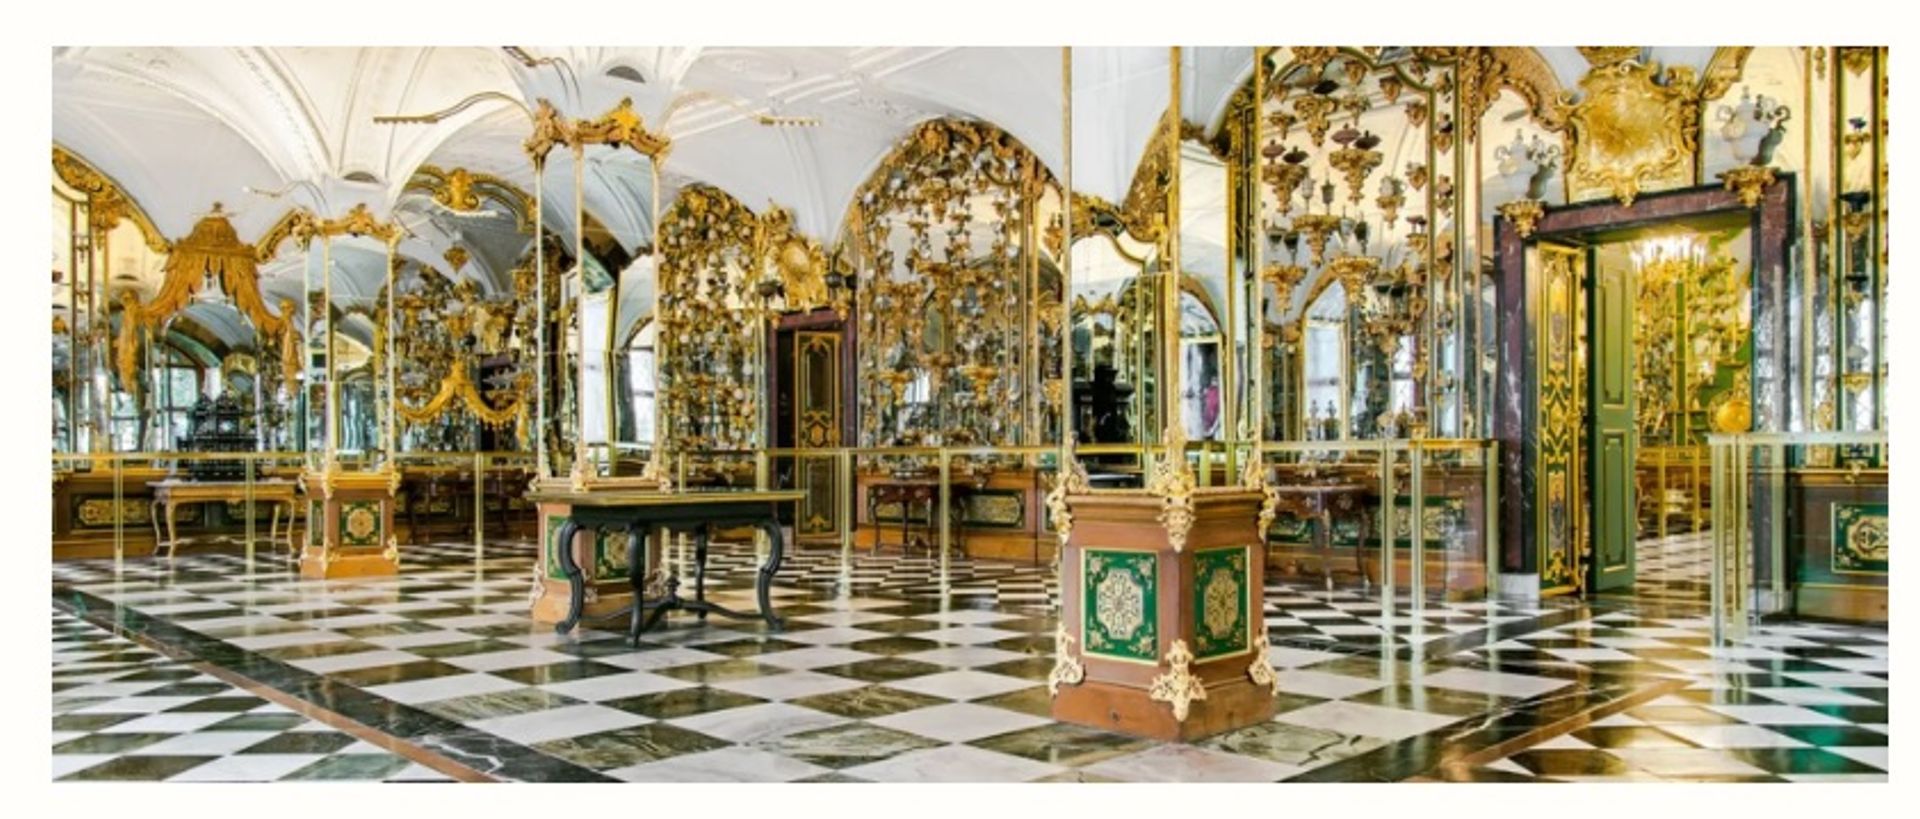 מוזיאון הכספת הירוקה בדרזדן נשדד על ידי גנבים בשנת 2019

באדיבות SKD